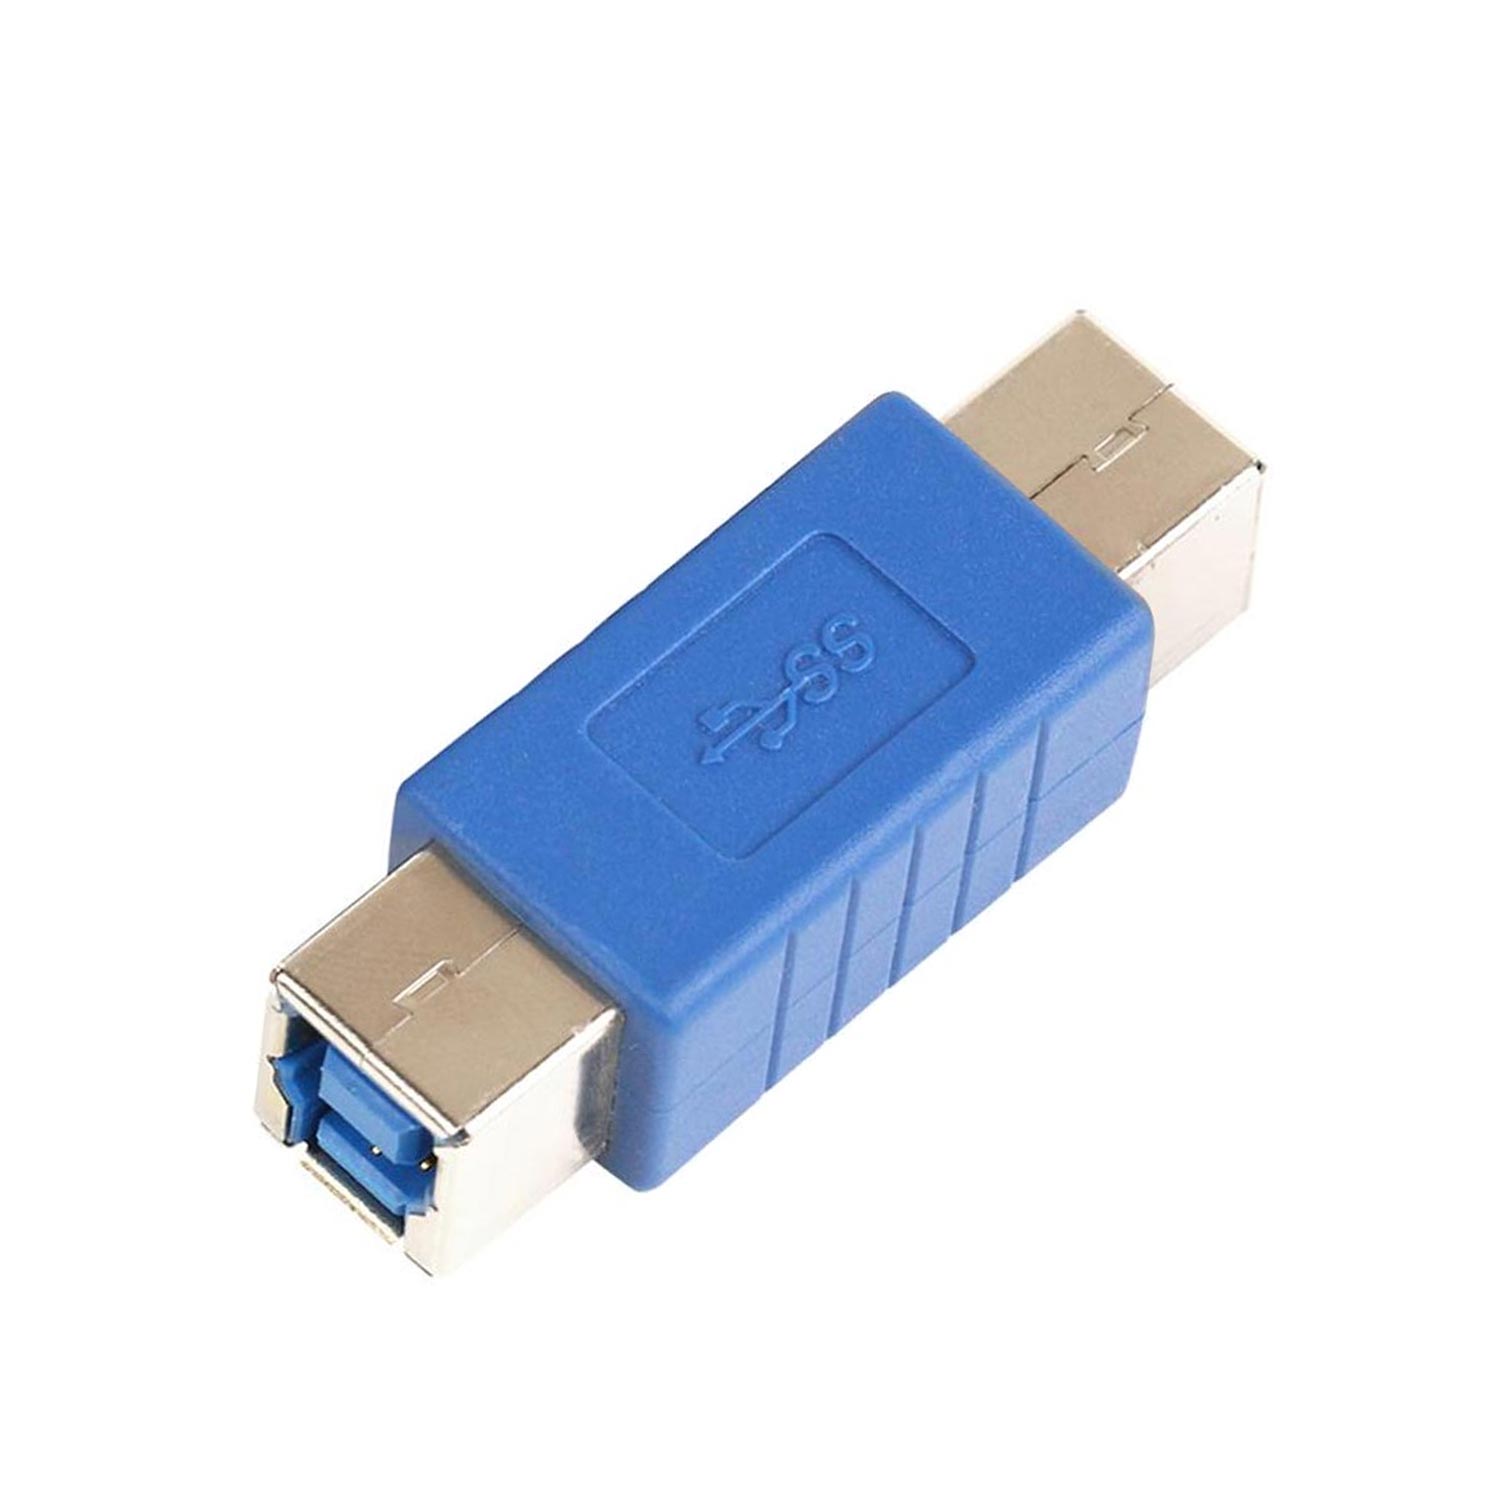 USB ARA APARAT BF TO BF YAZICI 3.0